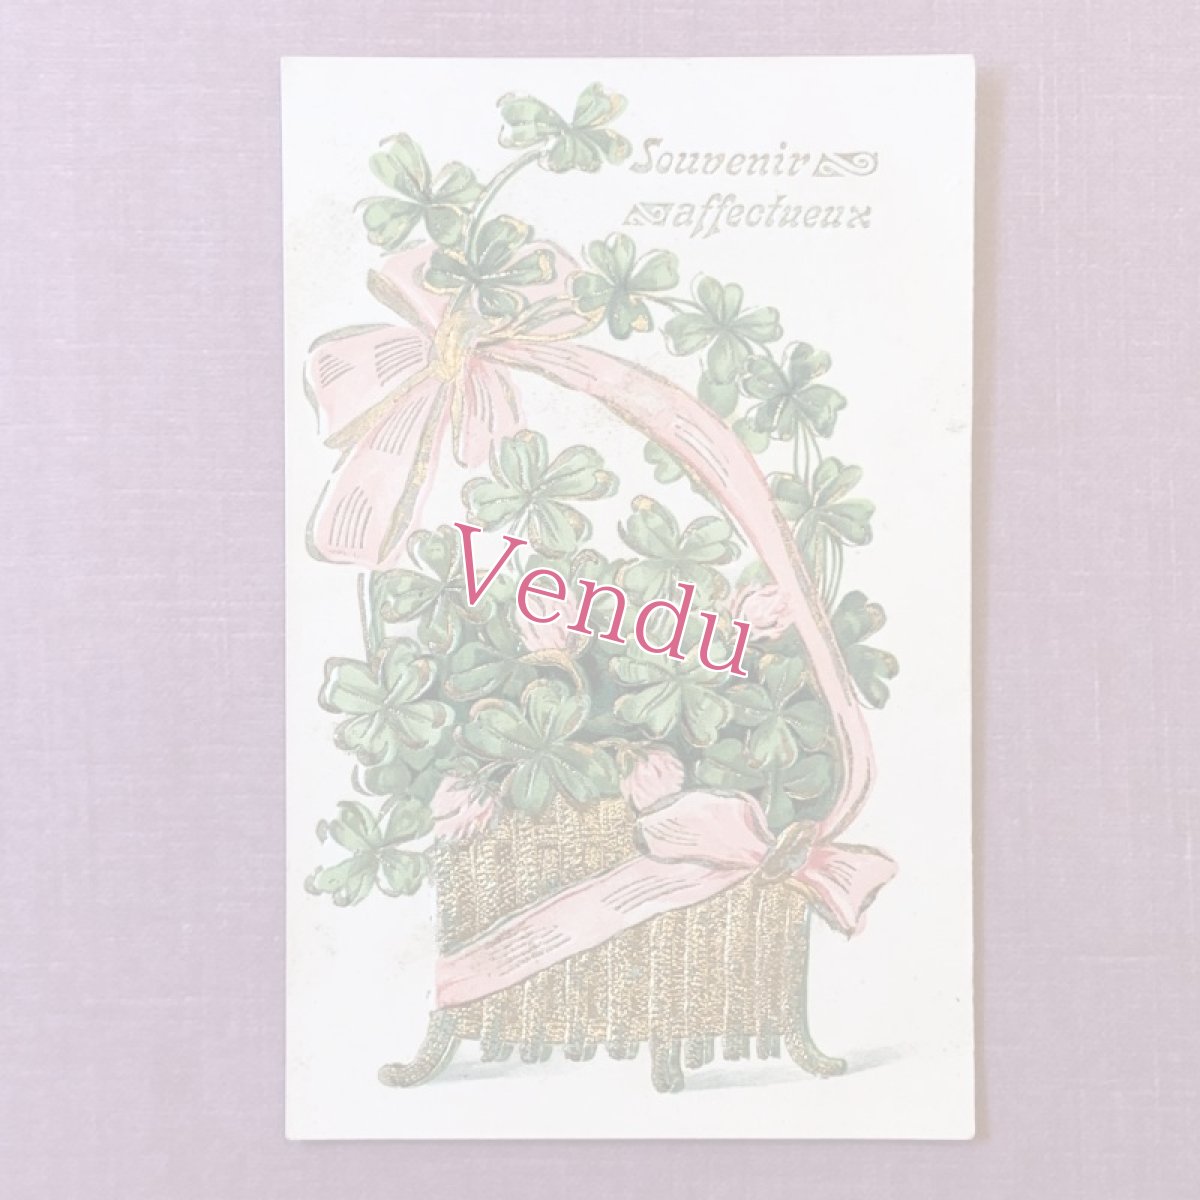 画像1: 赤詰草とピンクのリボンで飾られたパニエのポストカード (1)